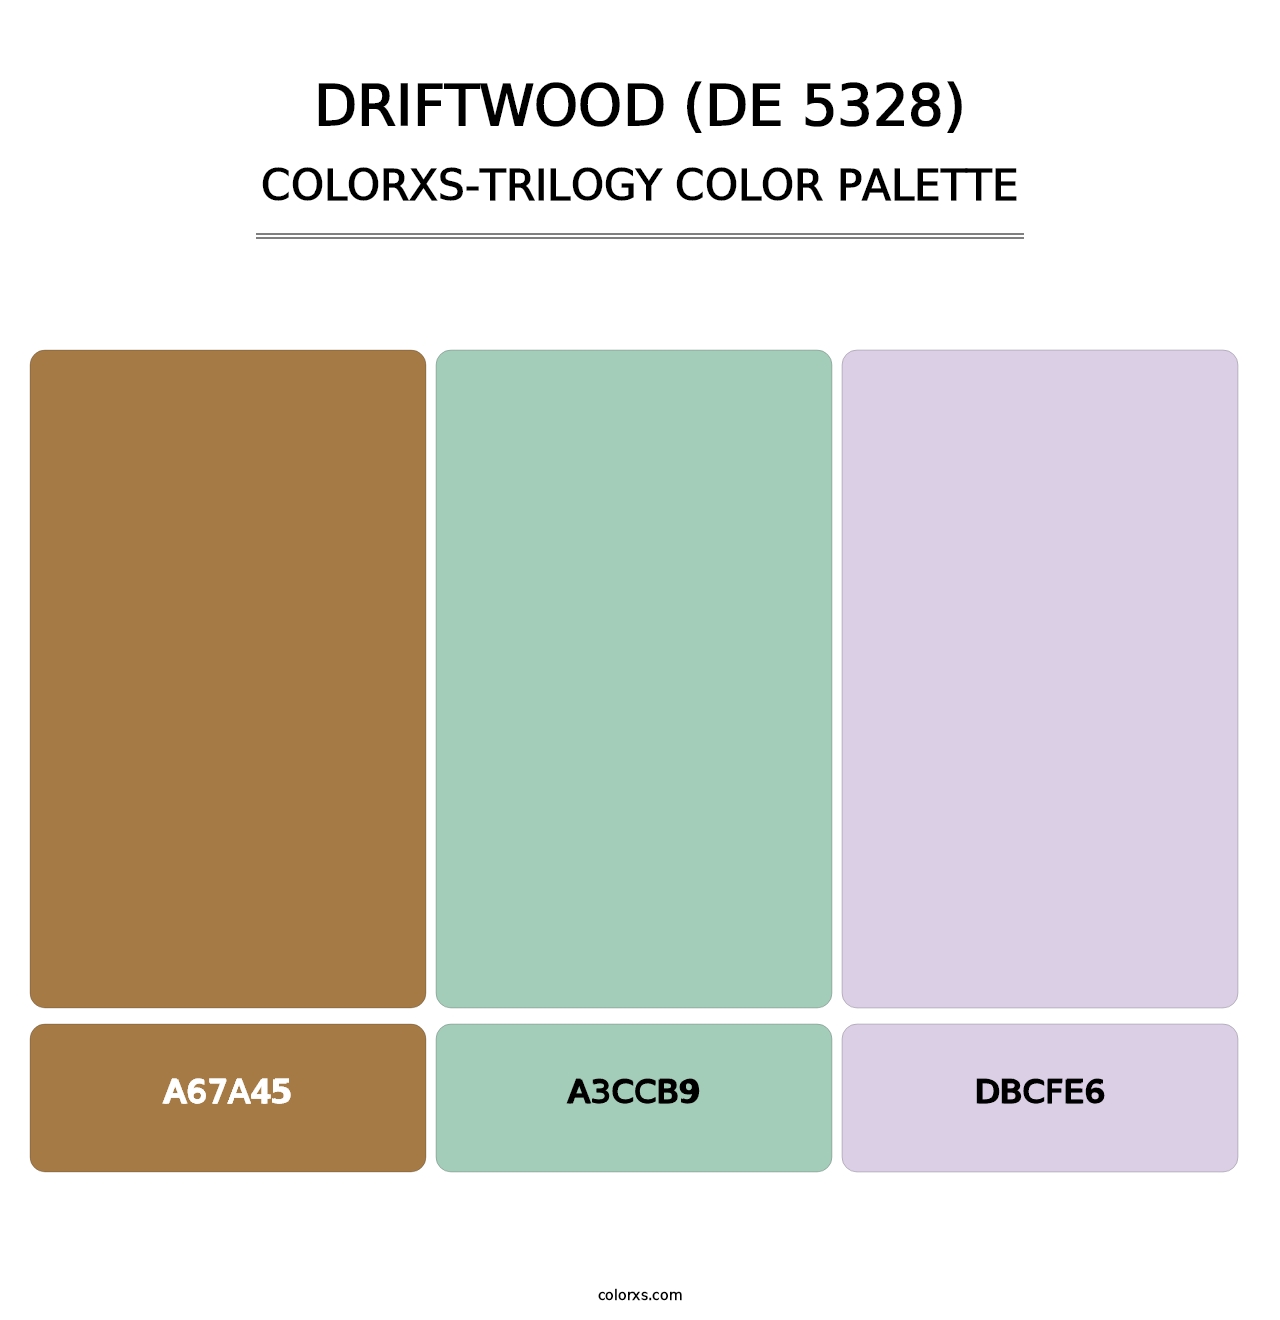 Driftwood (DE 5328) - Colorxs Trilogy Palette